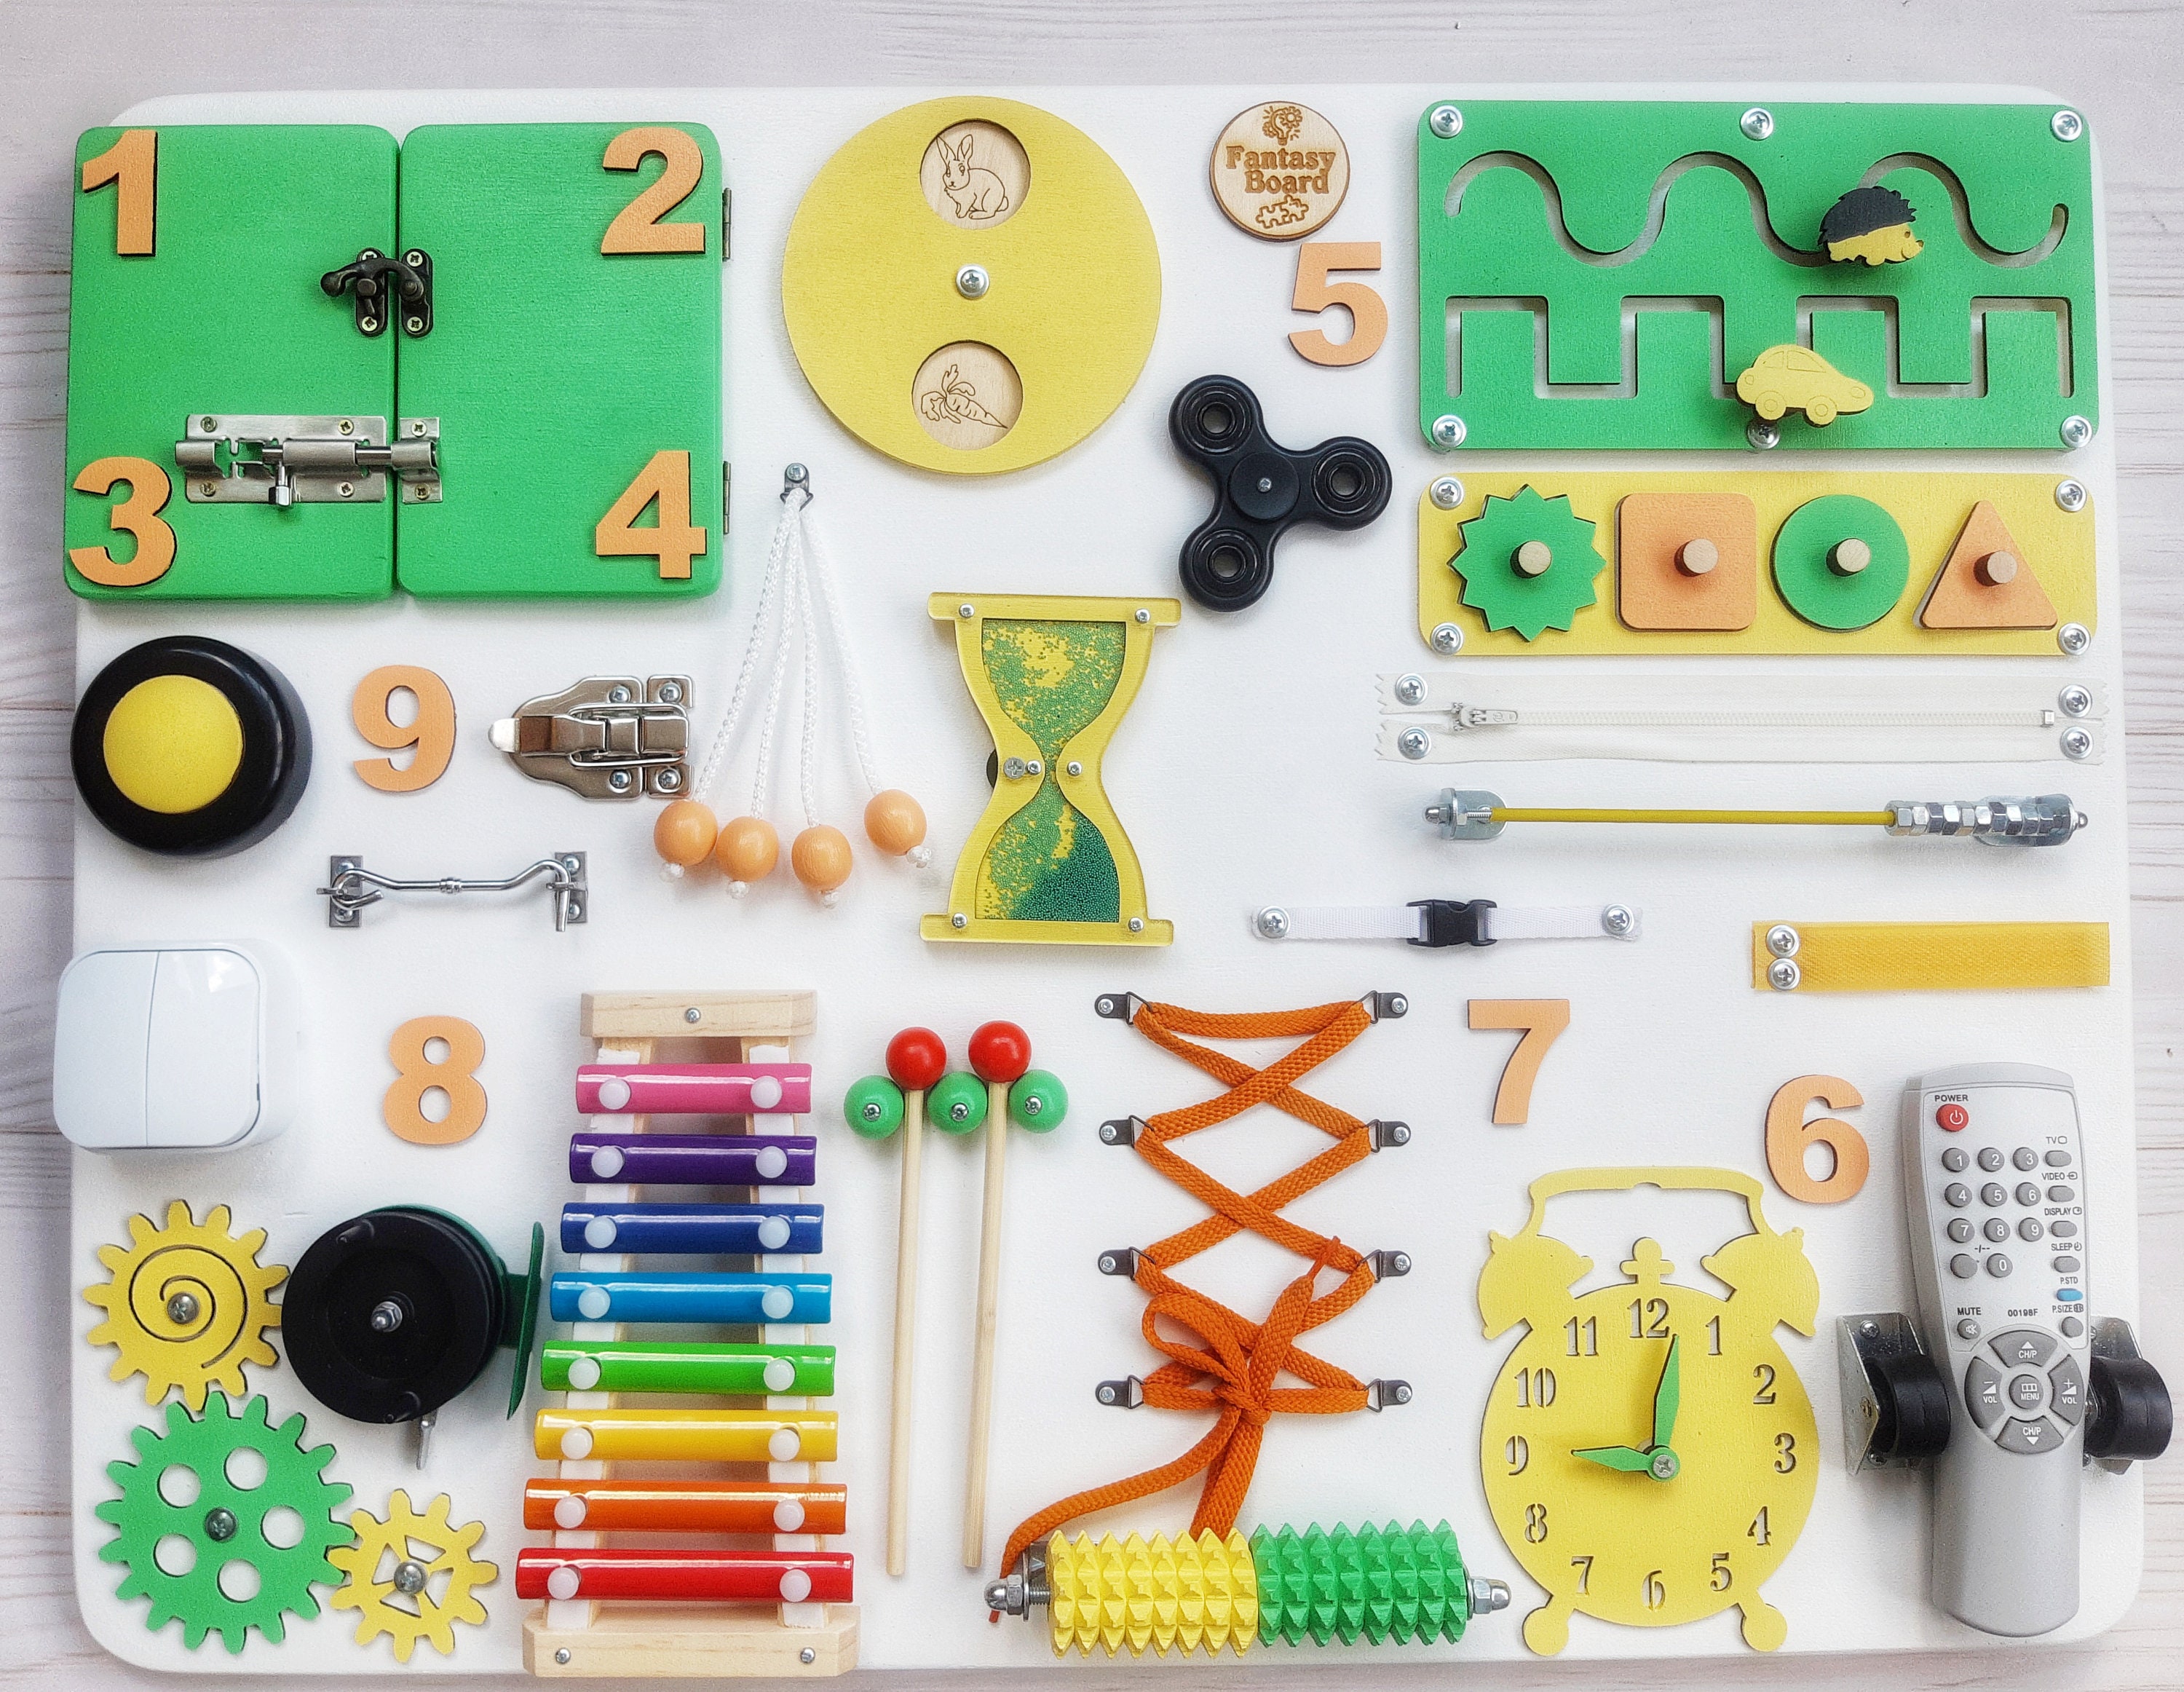  Syahro Montessori Busy Board, Wooden Kid Sensory Board